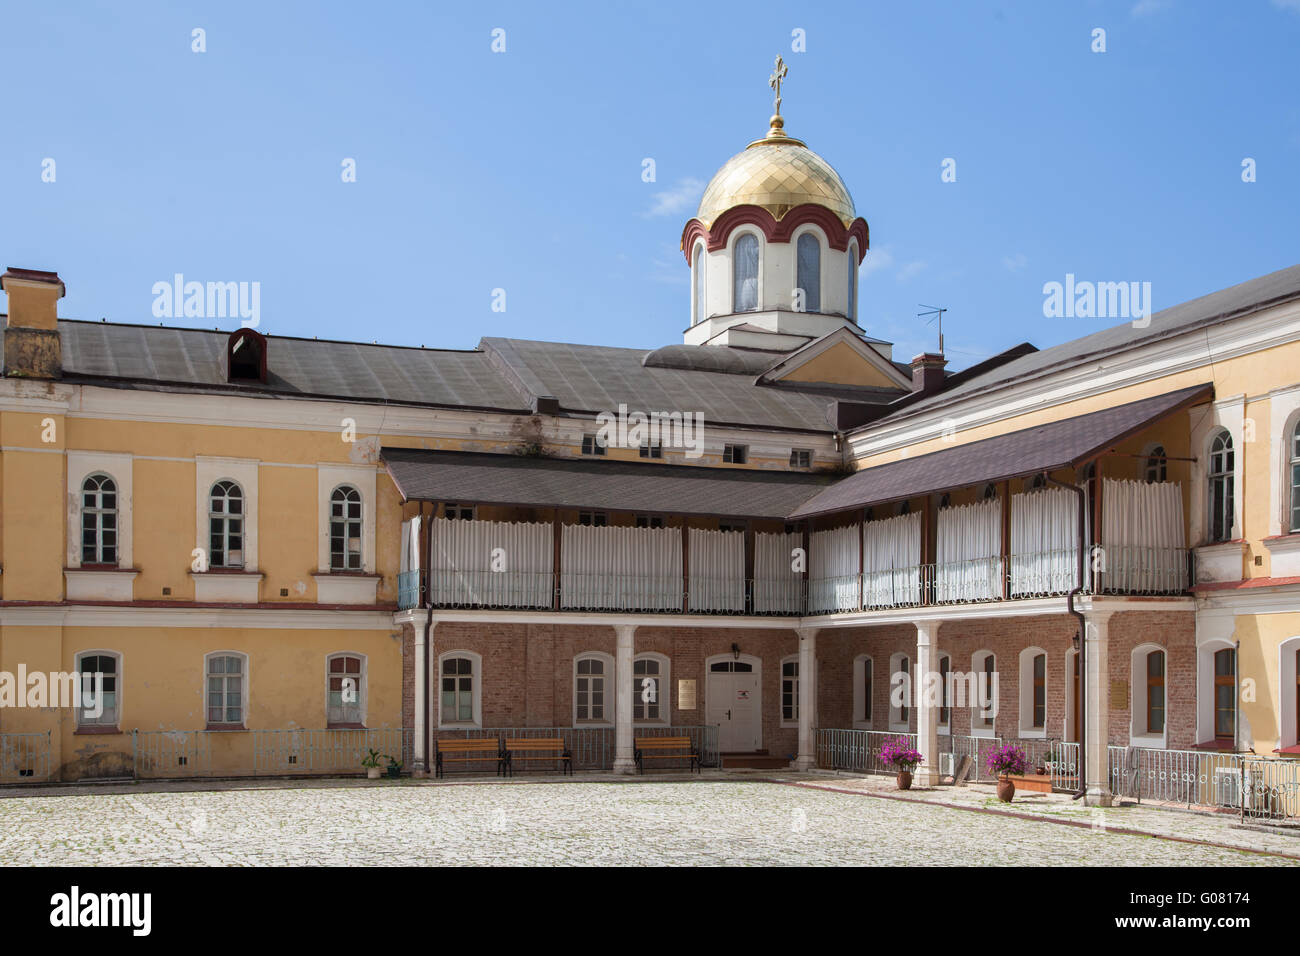 Der Innenhof des Klosters neue Athos oder Akhali Atoni ist eine Stadt in Gudauta Petrograd von Abchasien Stockfoto